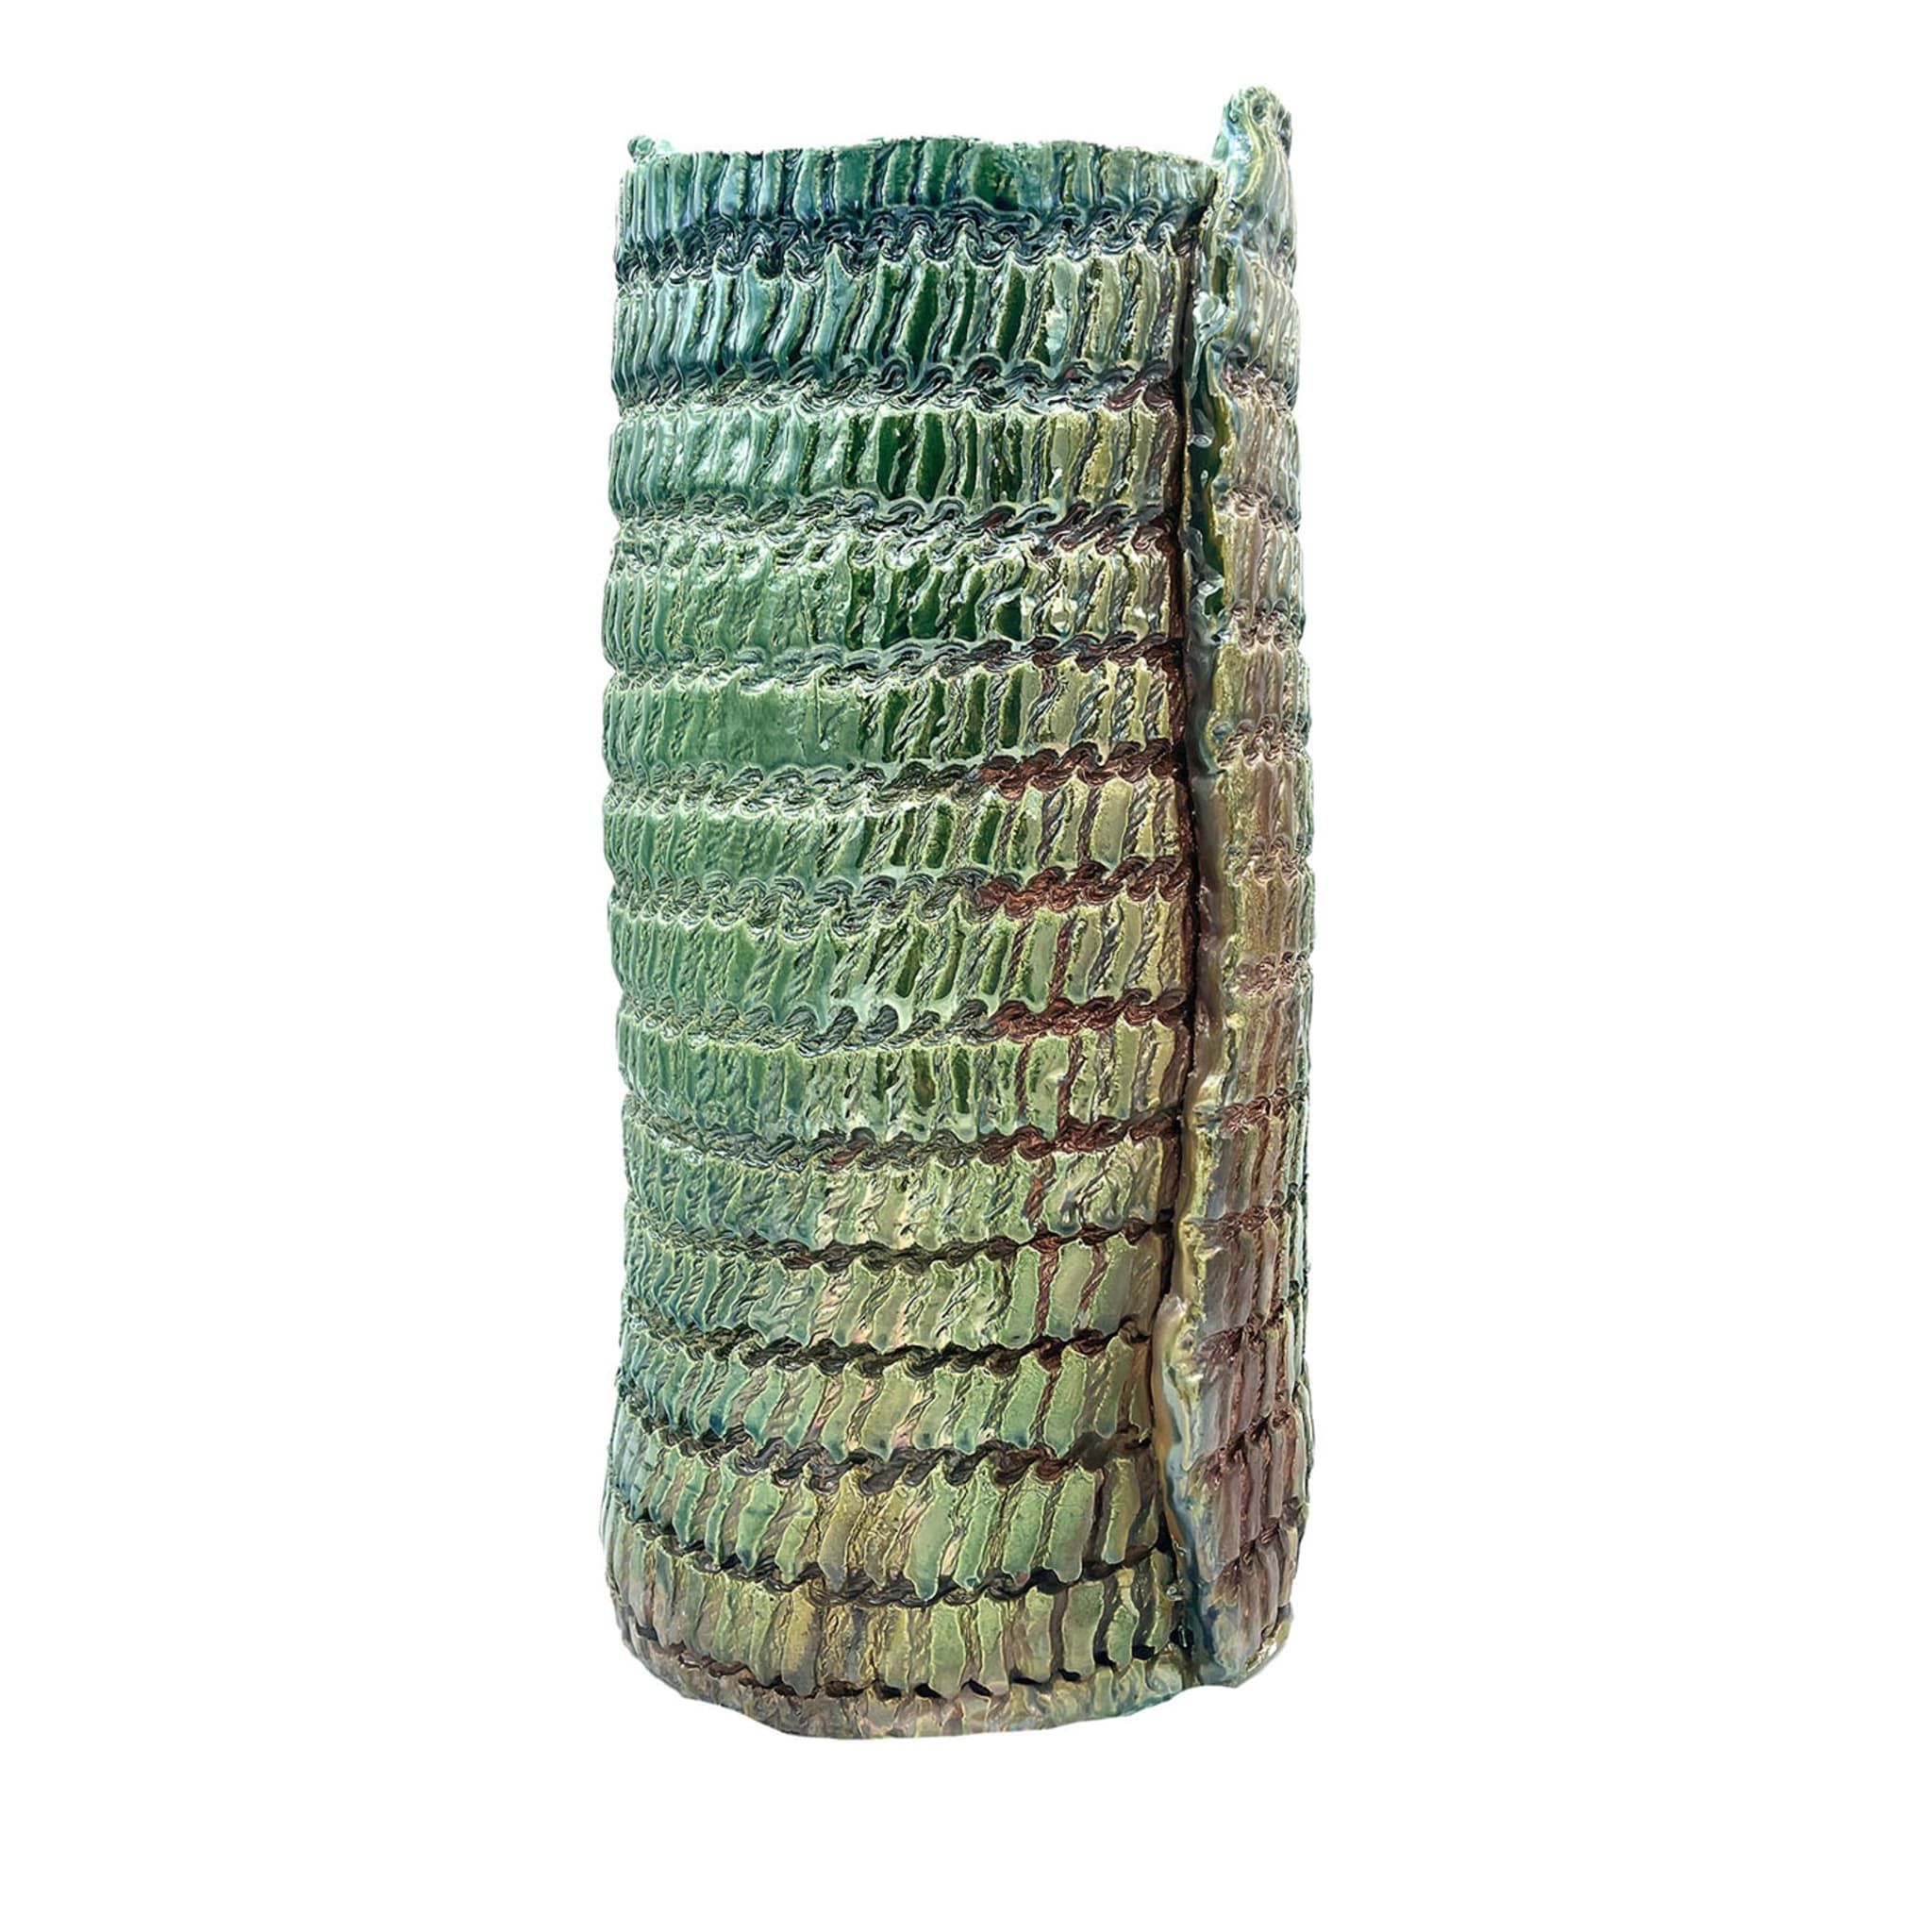 Jarrón de Raku con estampado textil iridiscente metálico - Vista principal